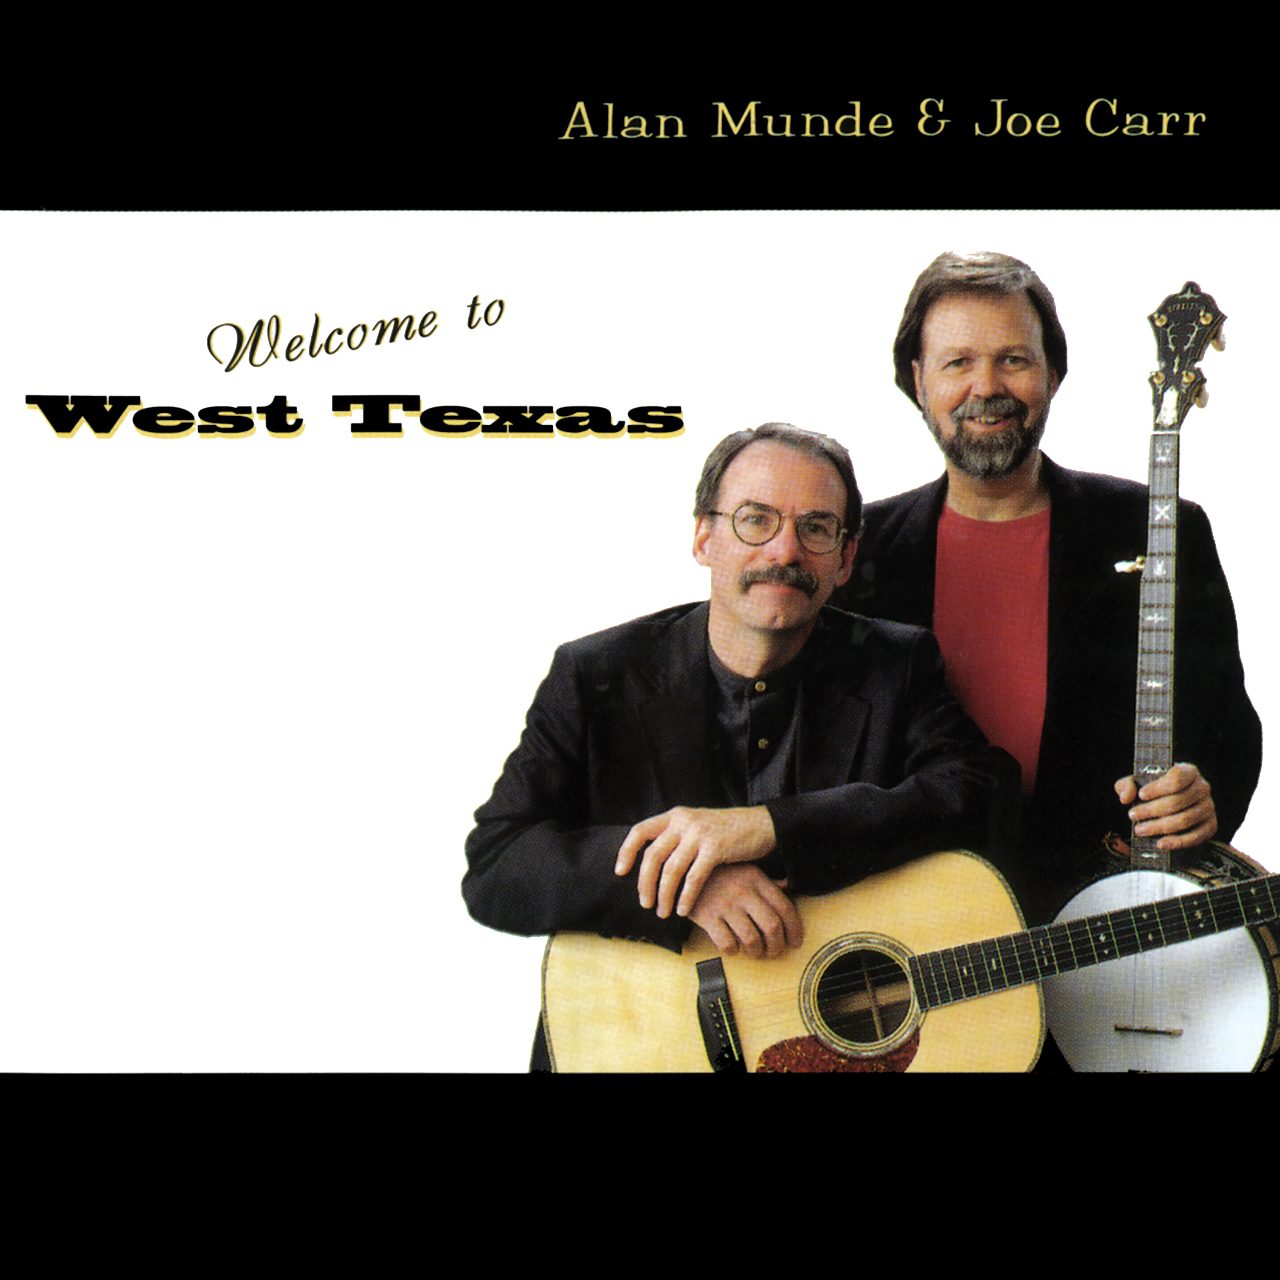 Alan Munde & Joe Carr - Welcome To West Texas cover album